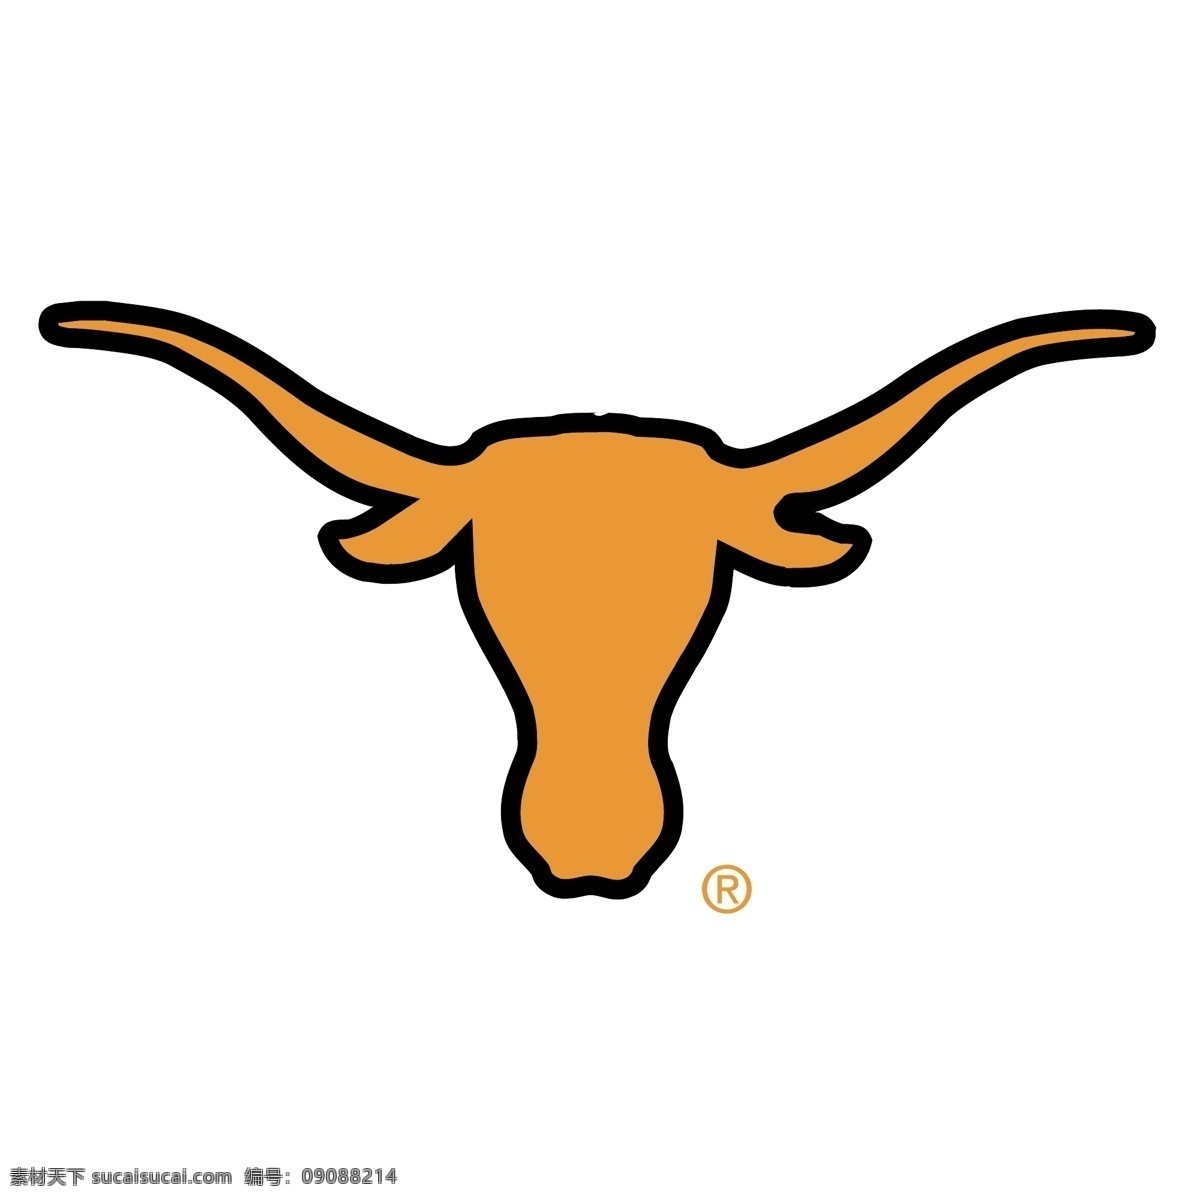 德克萨斯 长角牛 矢量标志下载 免费矢量标识 商标 品牌标识 标识 矢量 免费 品牌 公司 白色